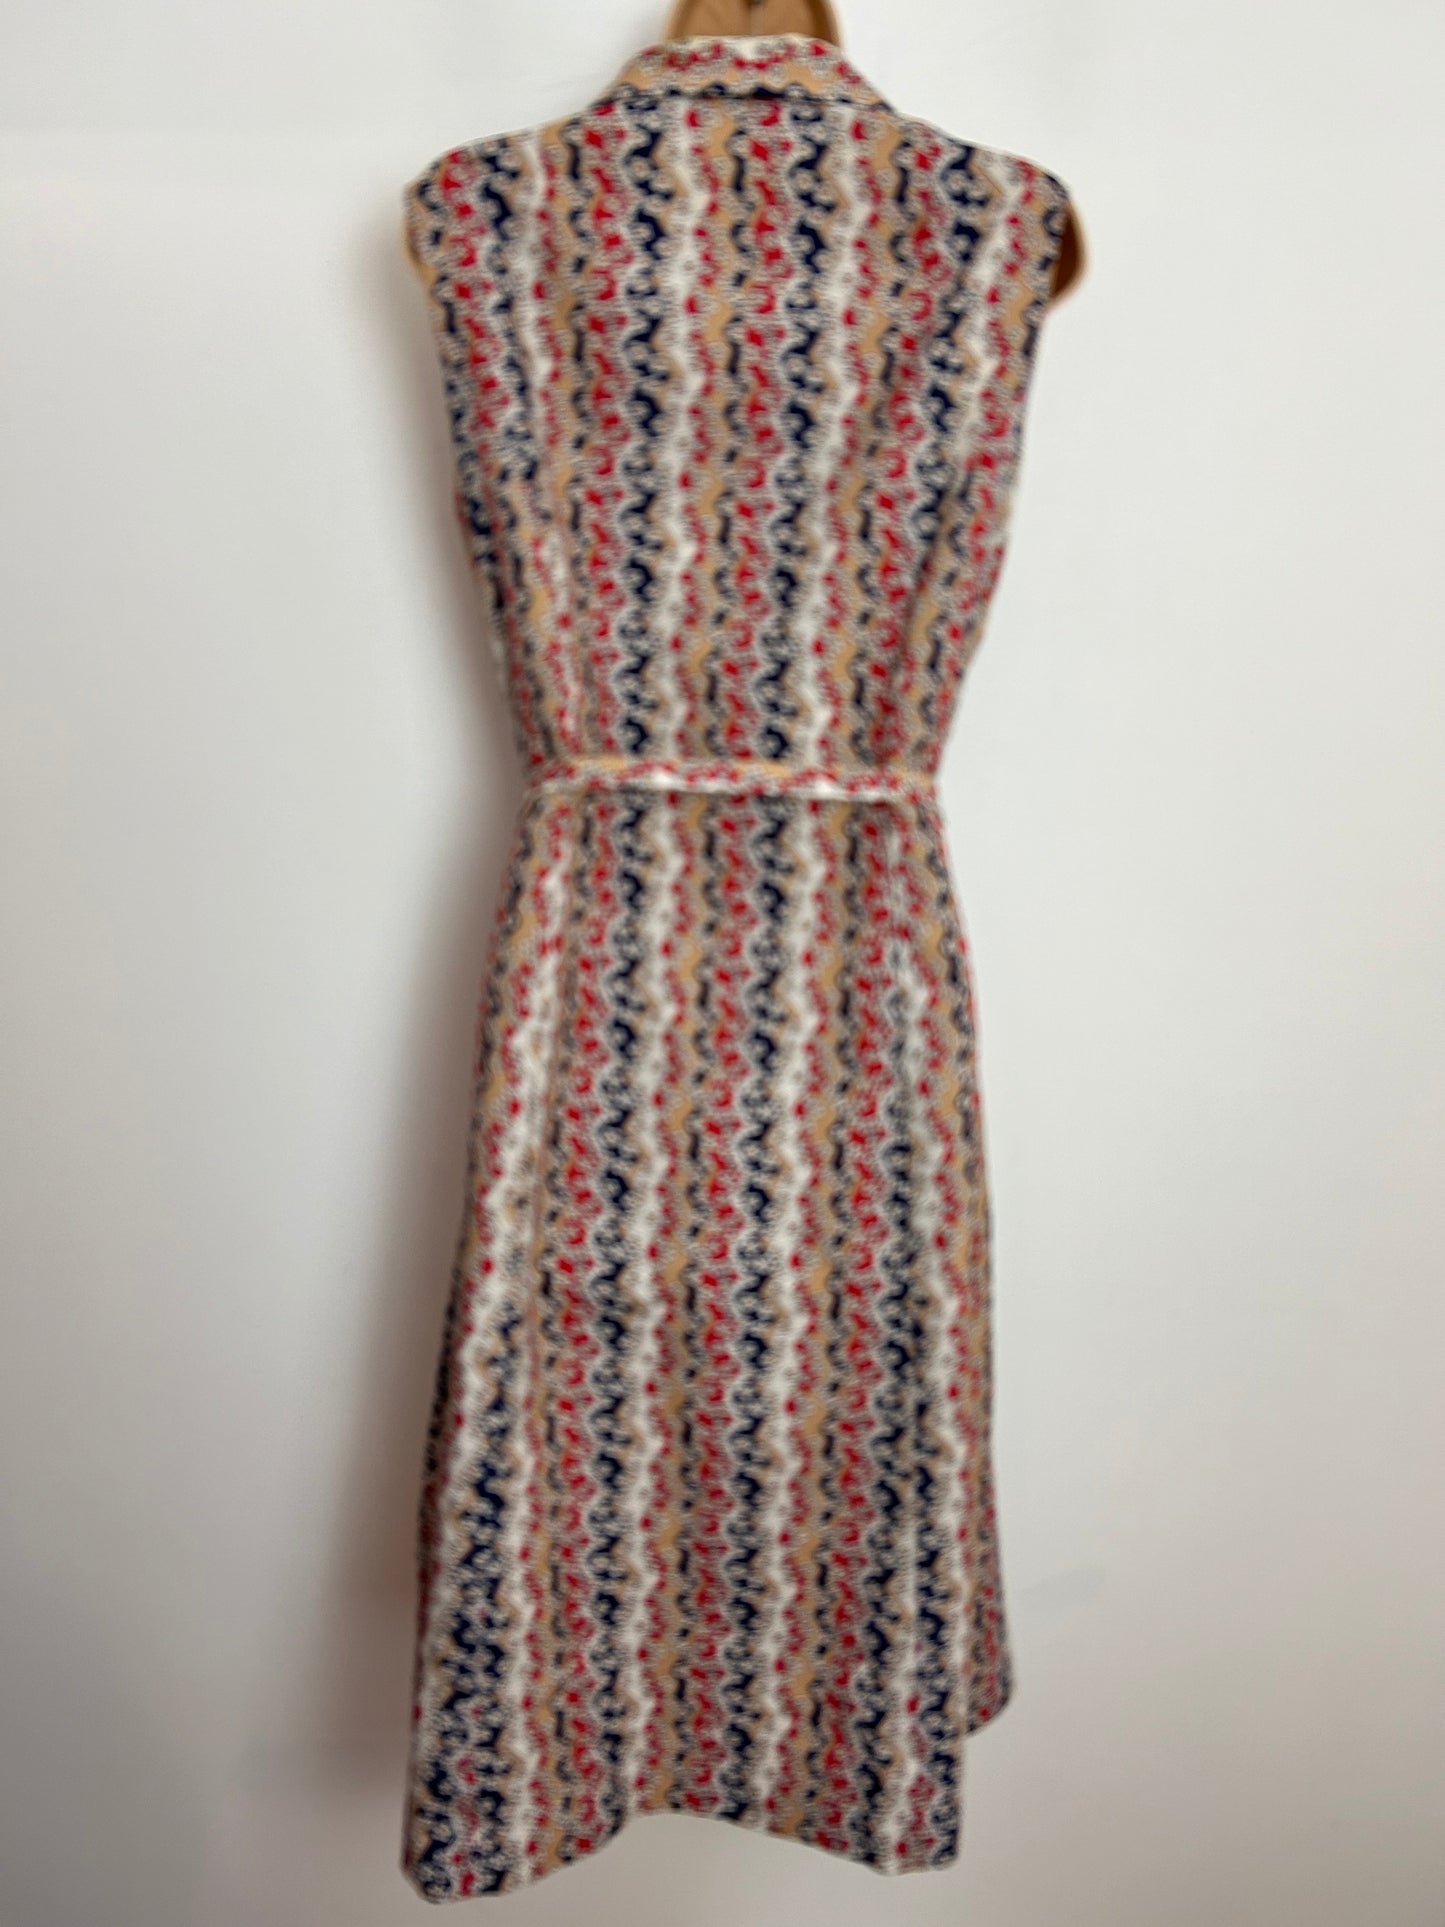 Vintage 1970s C&A UK Size 14-16 Sandy Beige Blue Red & Cream Zig Zag Stripe & Floral Print Belted Mod Dress